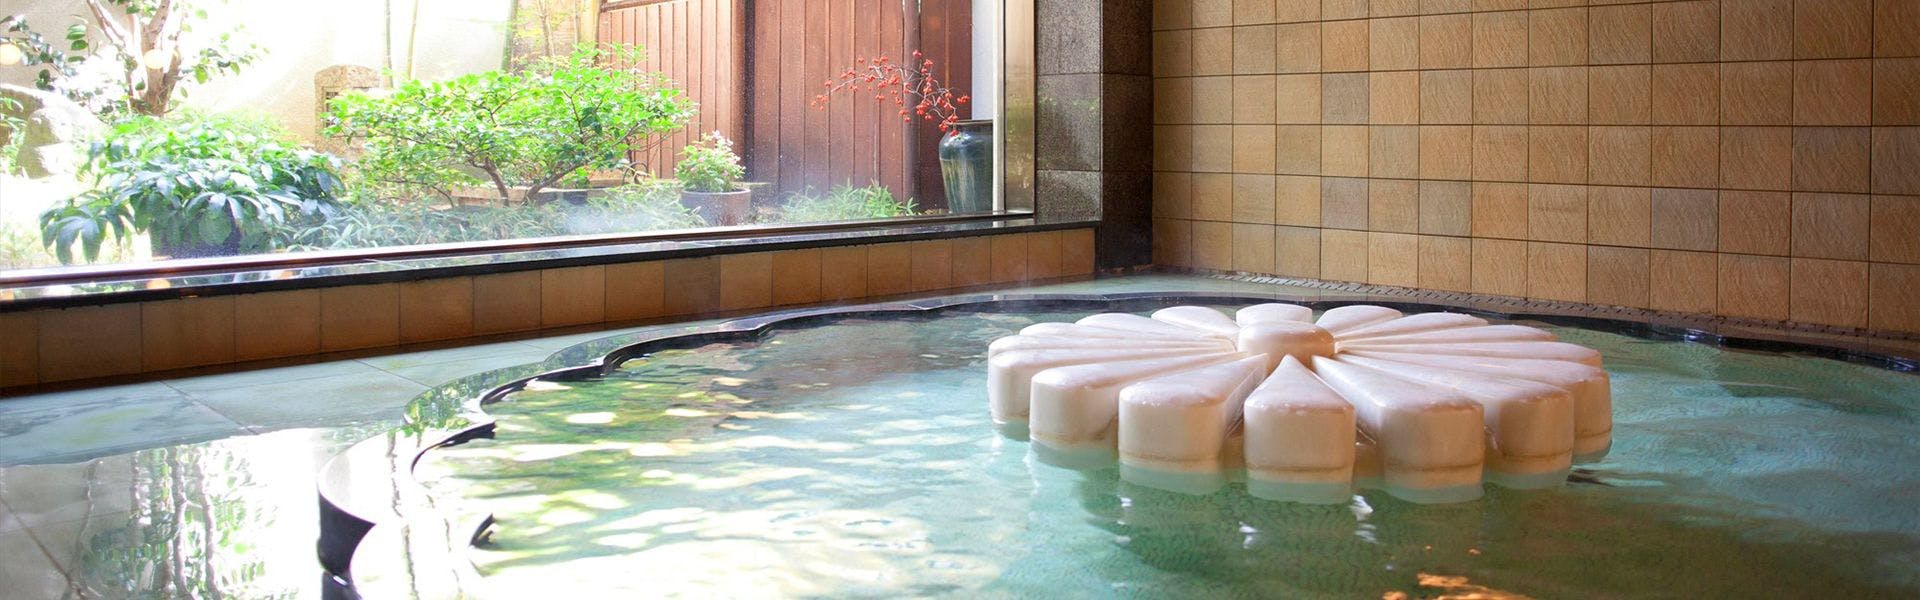 記念日におすすめのホテル・浅間温泉 菊之湯の写真3